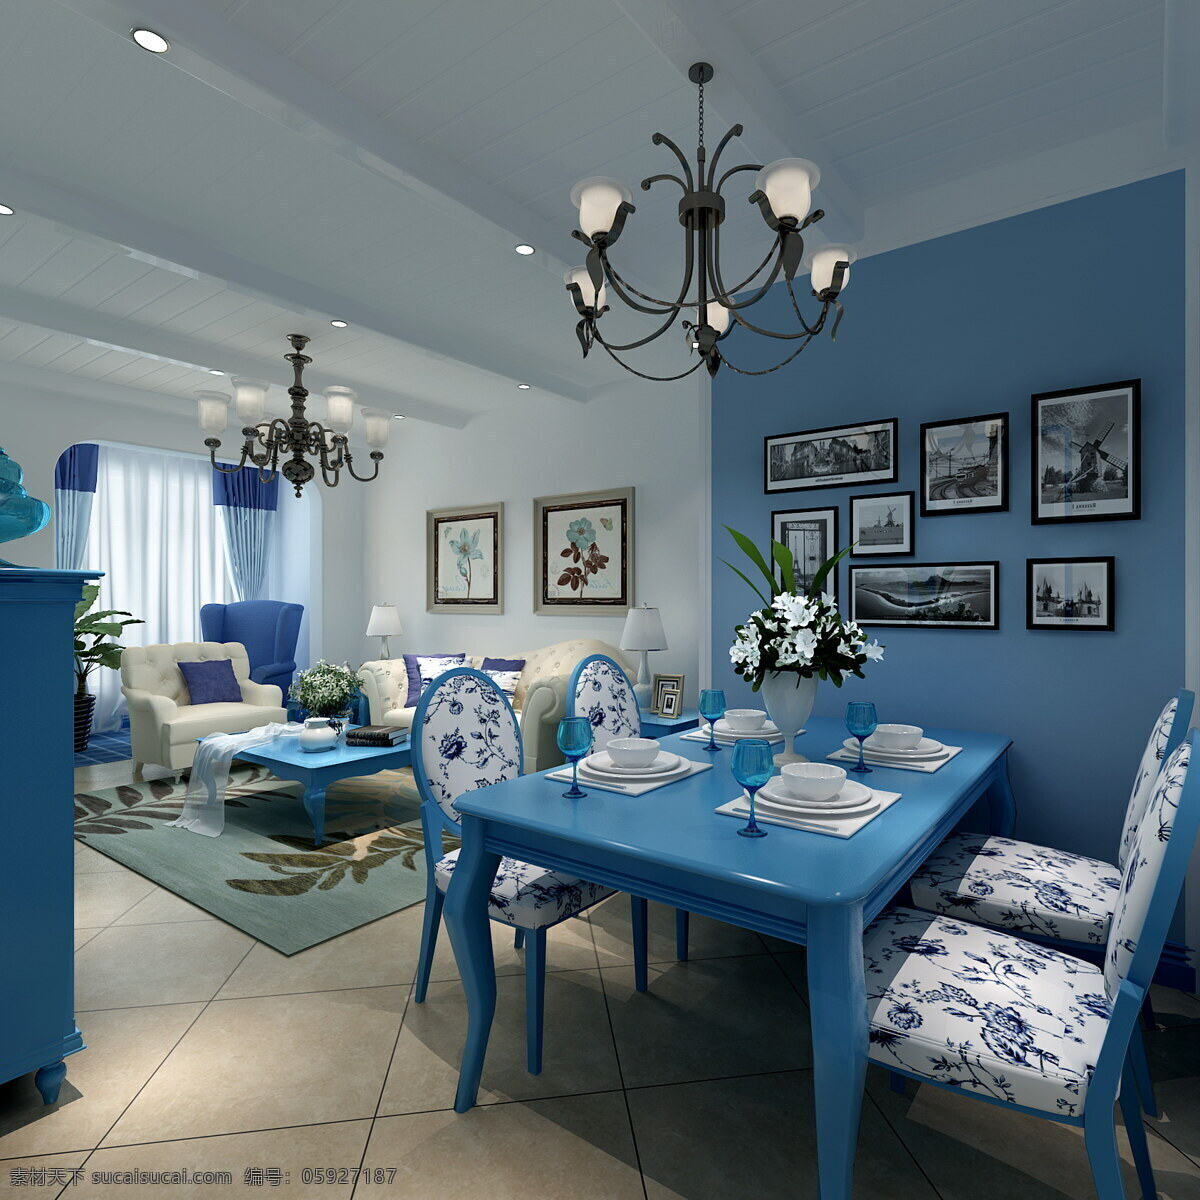 地中海 蓝色 餐厅 效果图 简约 室内设计 家装效果图 家居 家具 家装 餐桌 蓝色餐桌 照片背景墙 吊灯 地毯